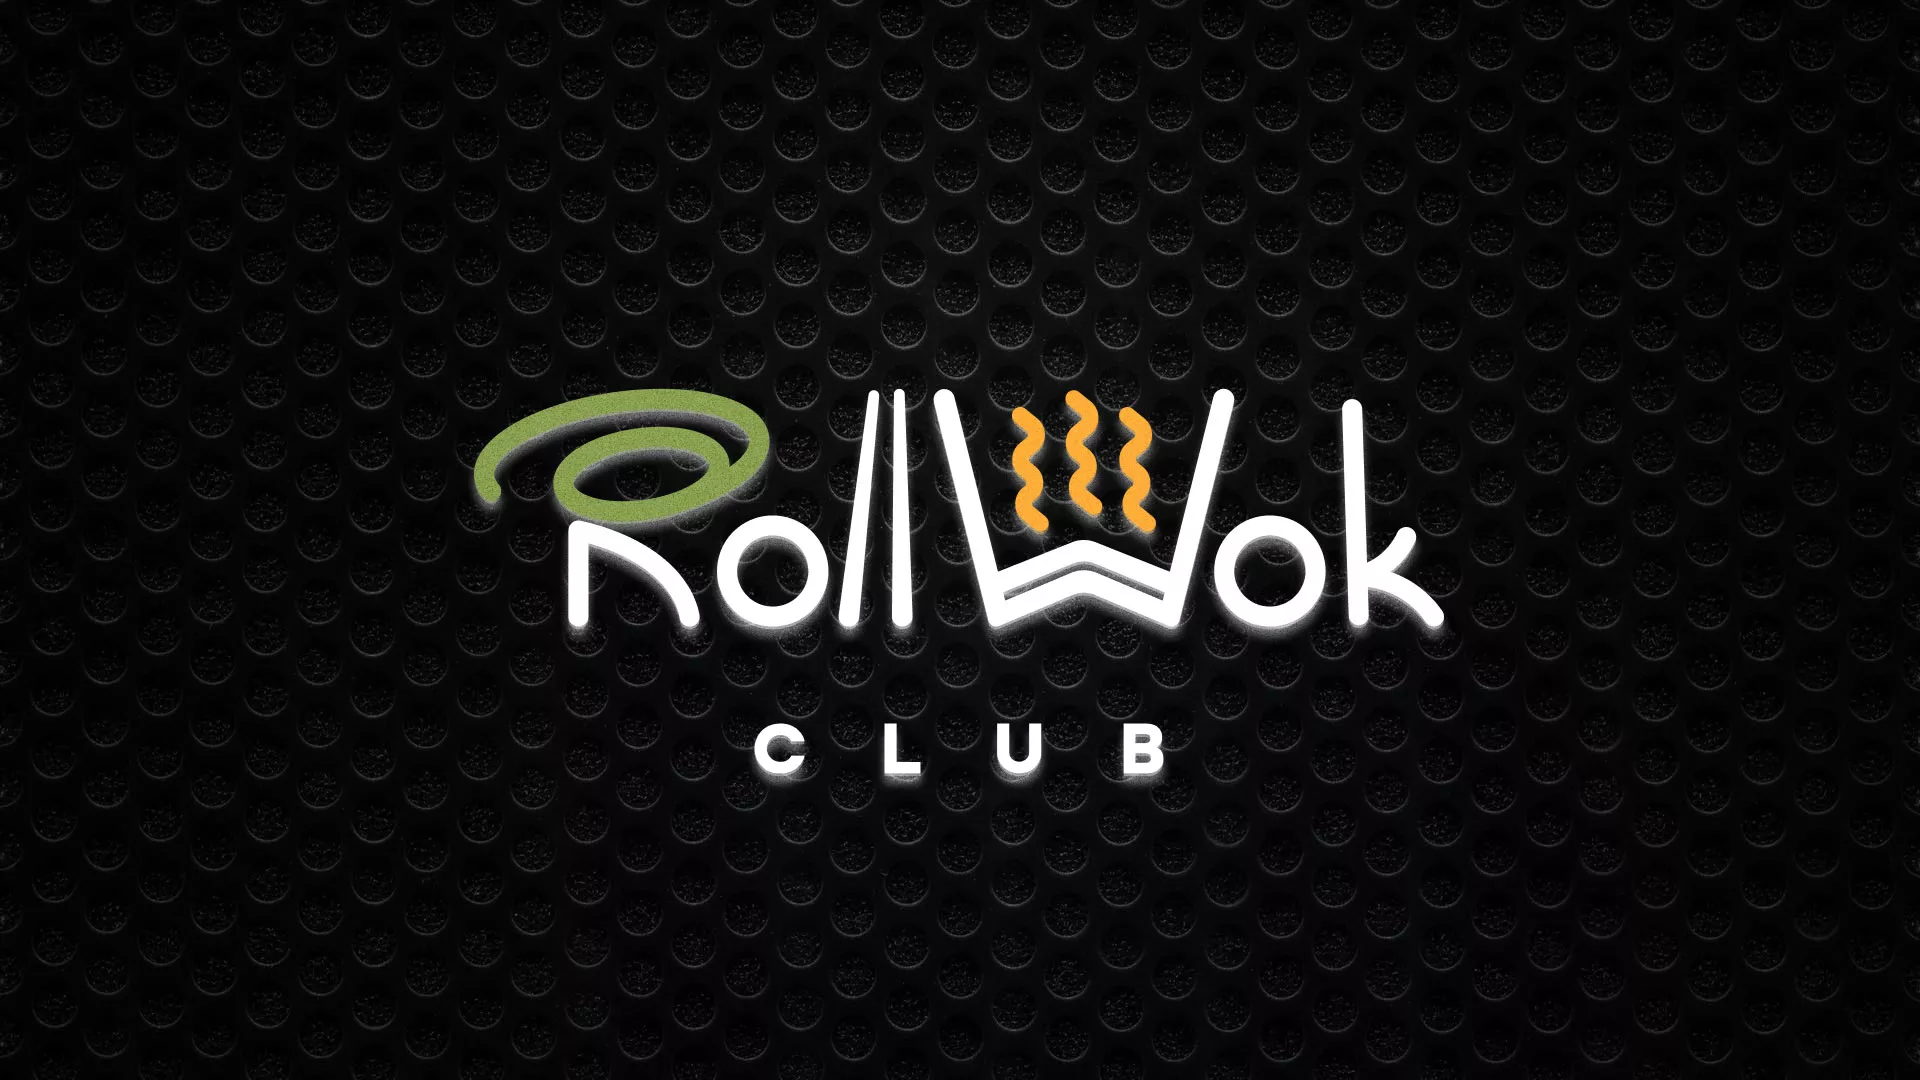 Брендирование торговых точек суши-бара «Roll Wok Club» в Выксе